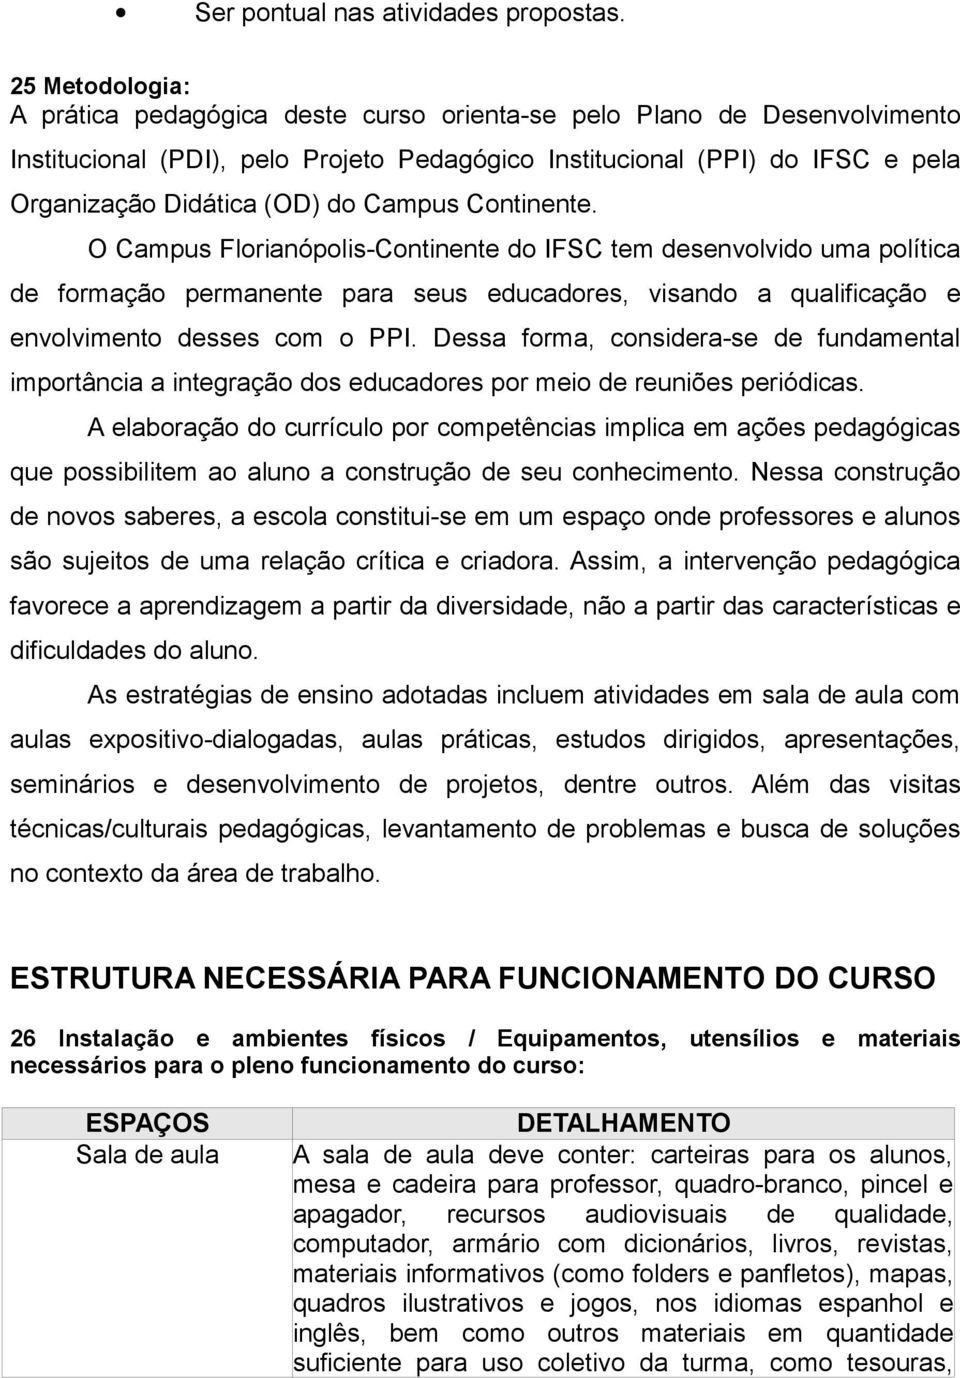 Campus Continente. O Campus Florianópolis-Continente do IFSC tem desenvolvido uma política de formação permanente para seus educadores, visando a qualificação e envolvimento desses com o PPI.